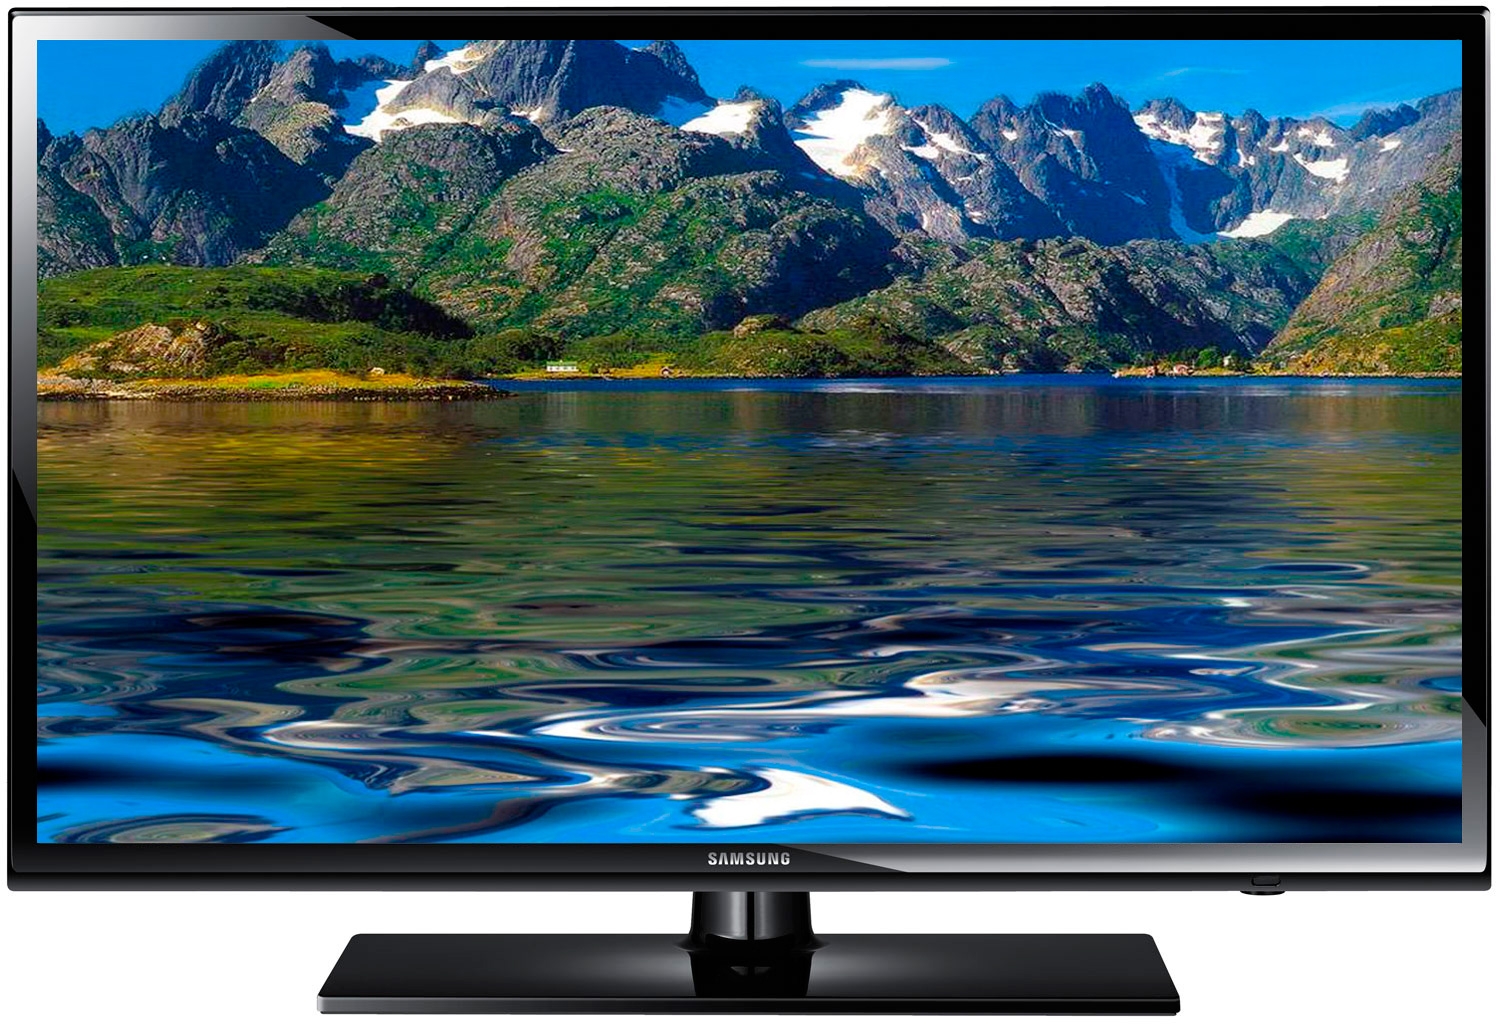 Купить телевизор в сочи. Самсунг смарт ТВ 32. Samsung Smart TV 32 дюйма. Samsung Smart TV 40. Телевизор самсунг 32 дюйма смарт.